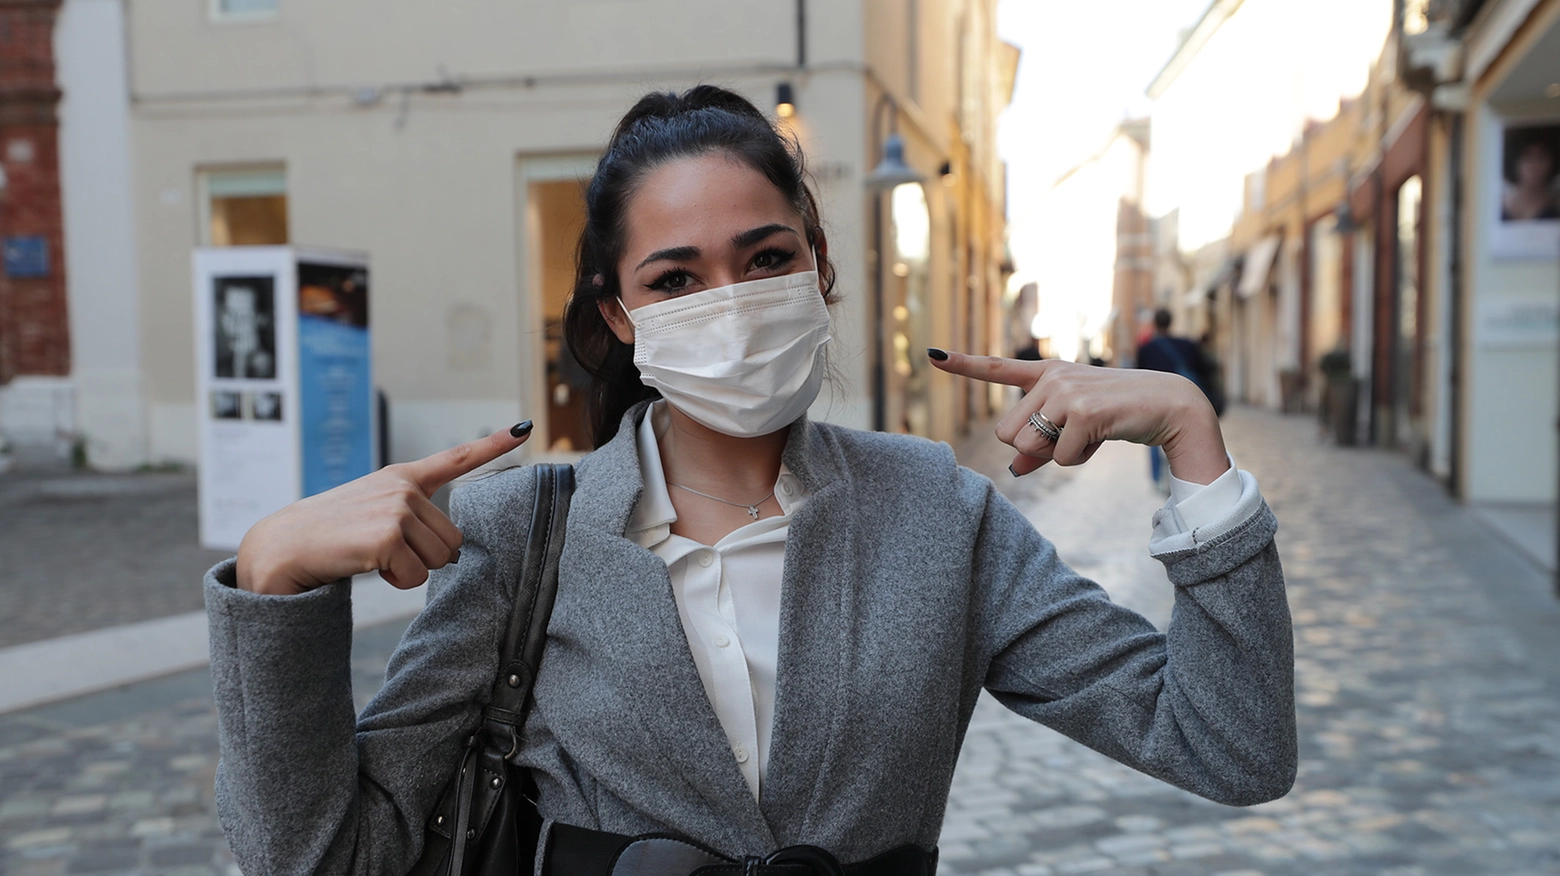 Coronavirus, tra le regole c'è l'obbligo di portare con sé la mascherina (foto Zani)